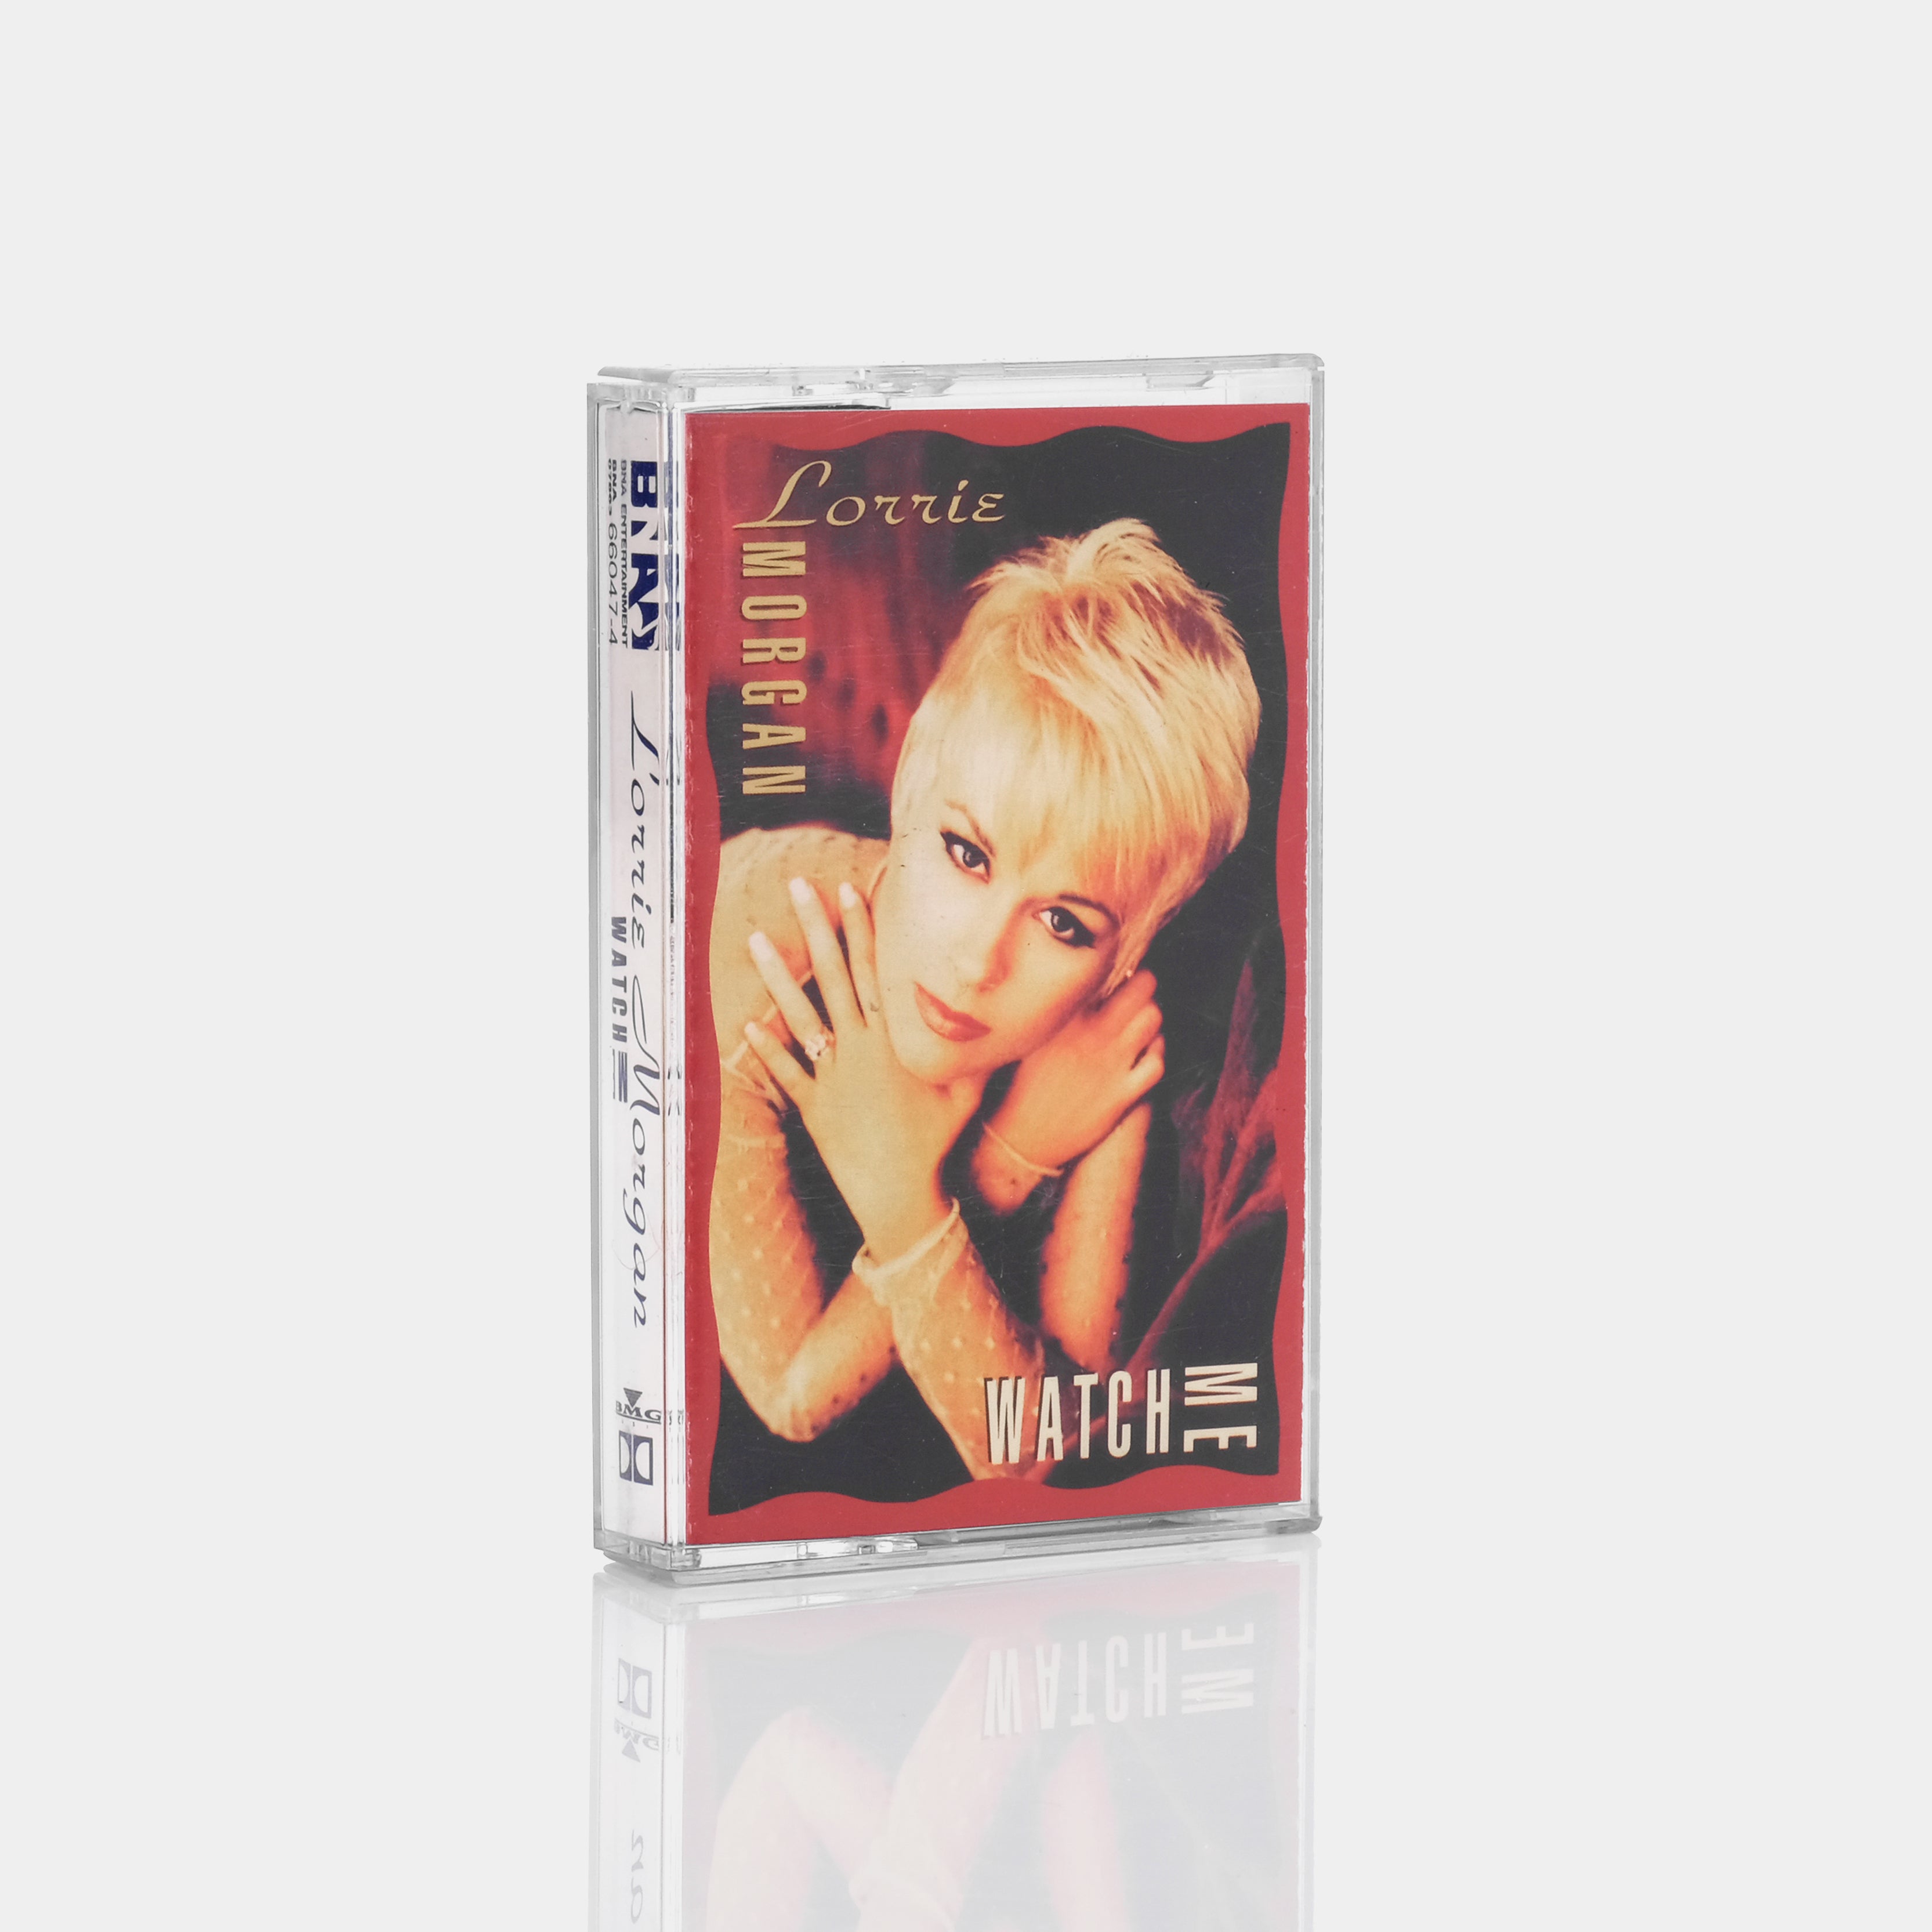 Lorrie Morgan - Watch Me Cassette Tape